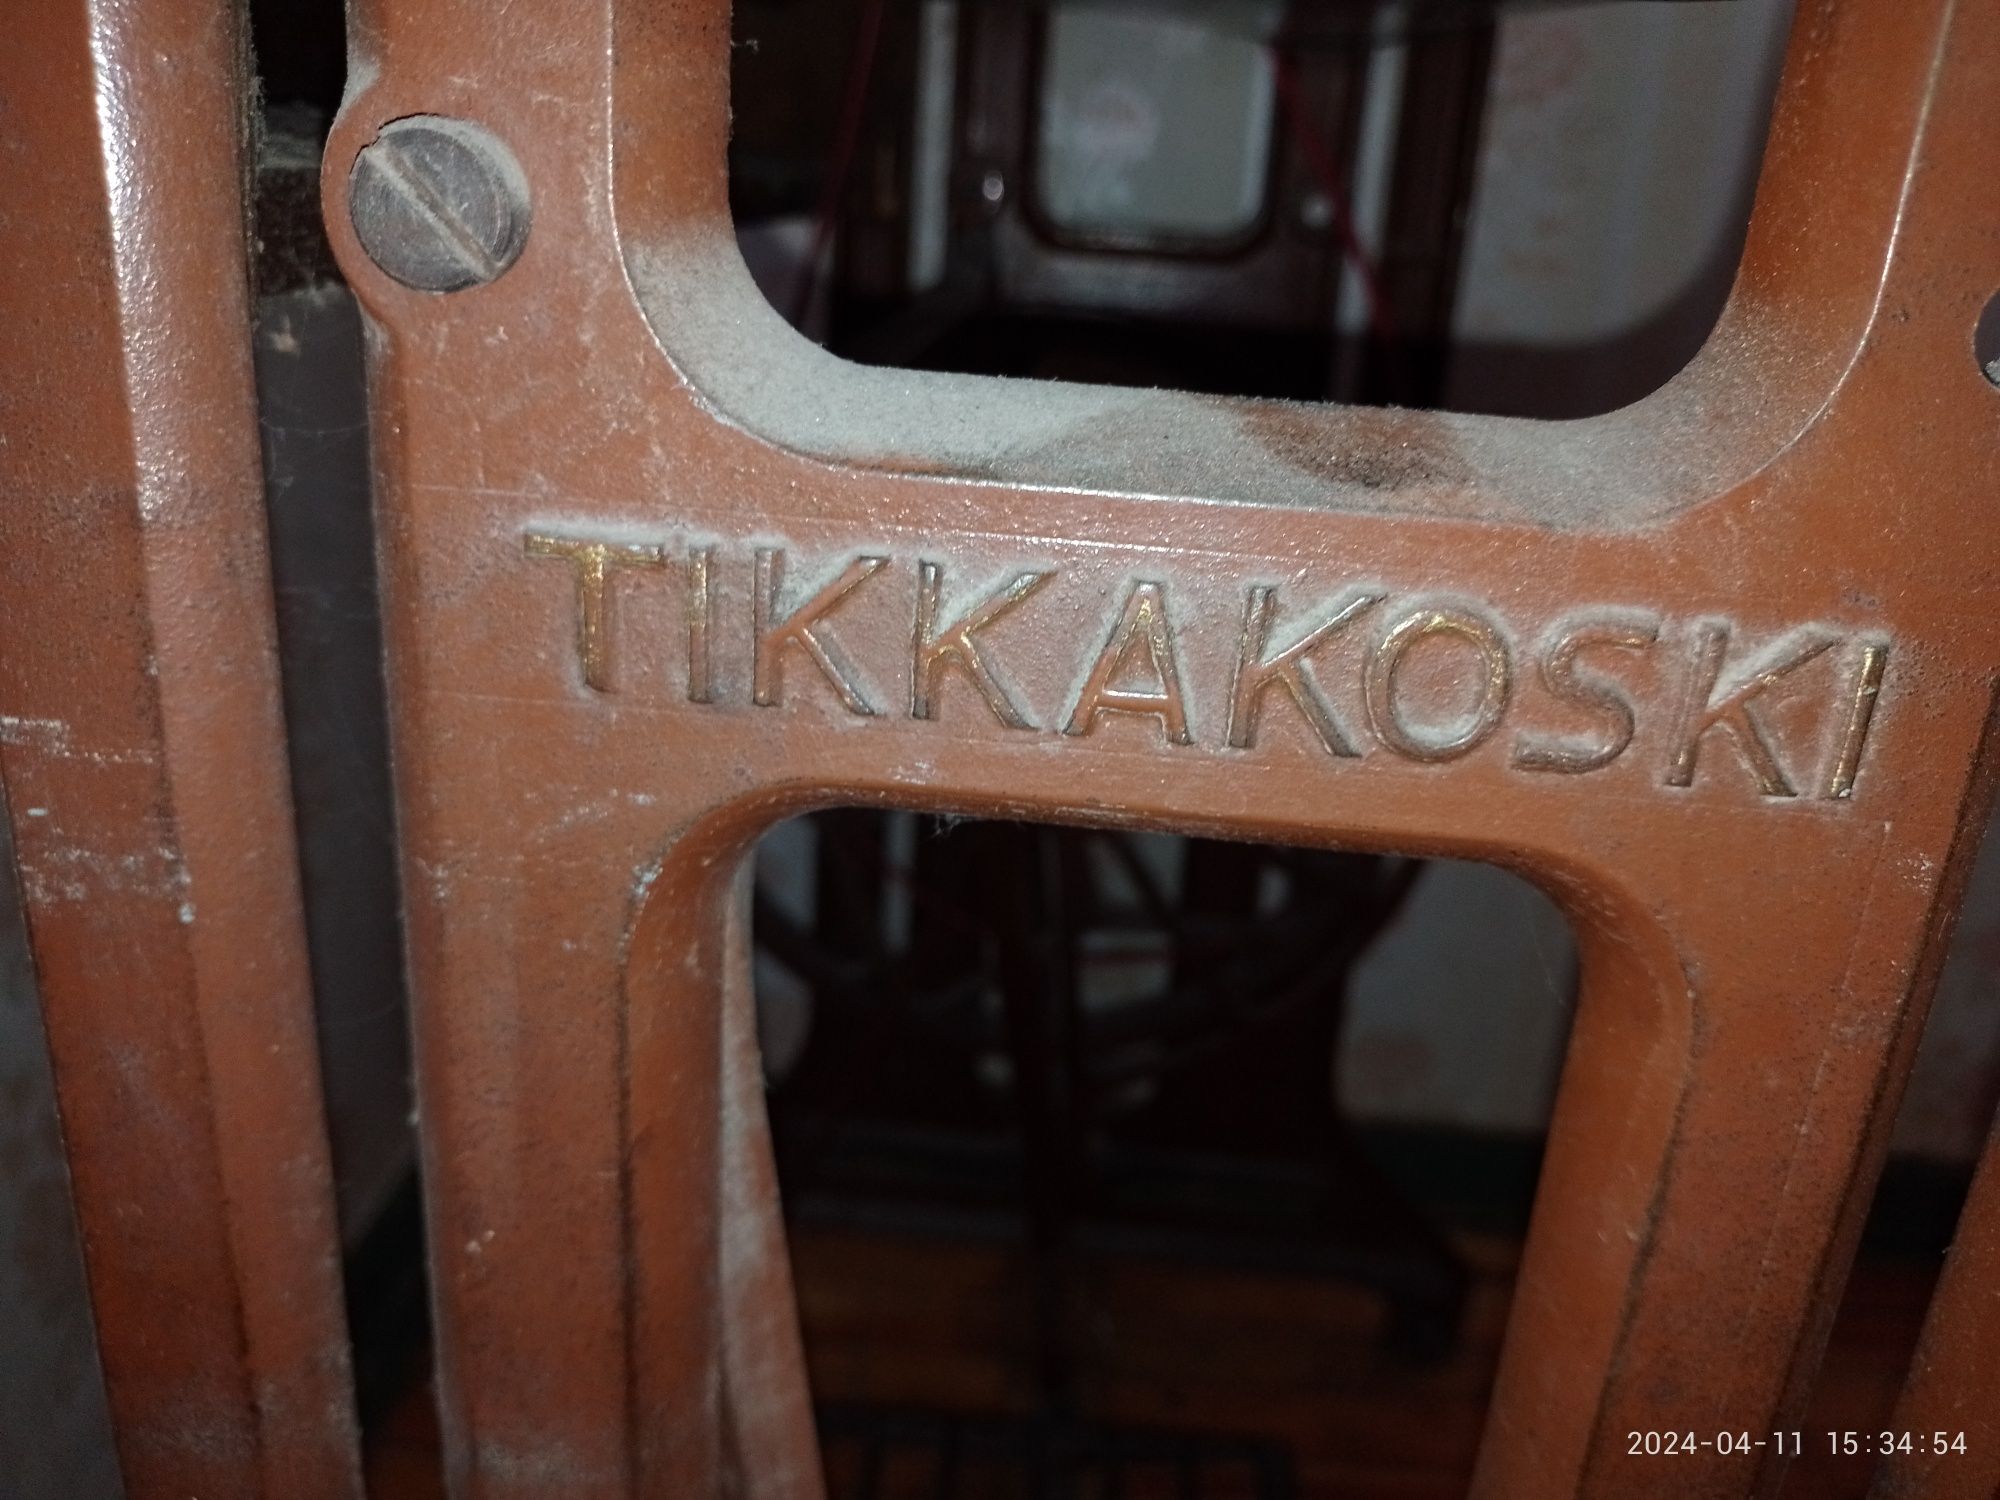 Продам швейну машинку Tikka, Фінляндія 

Зі столом та ножни